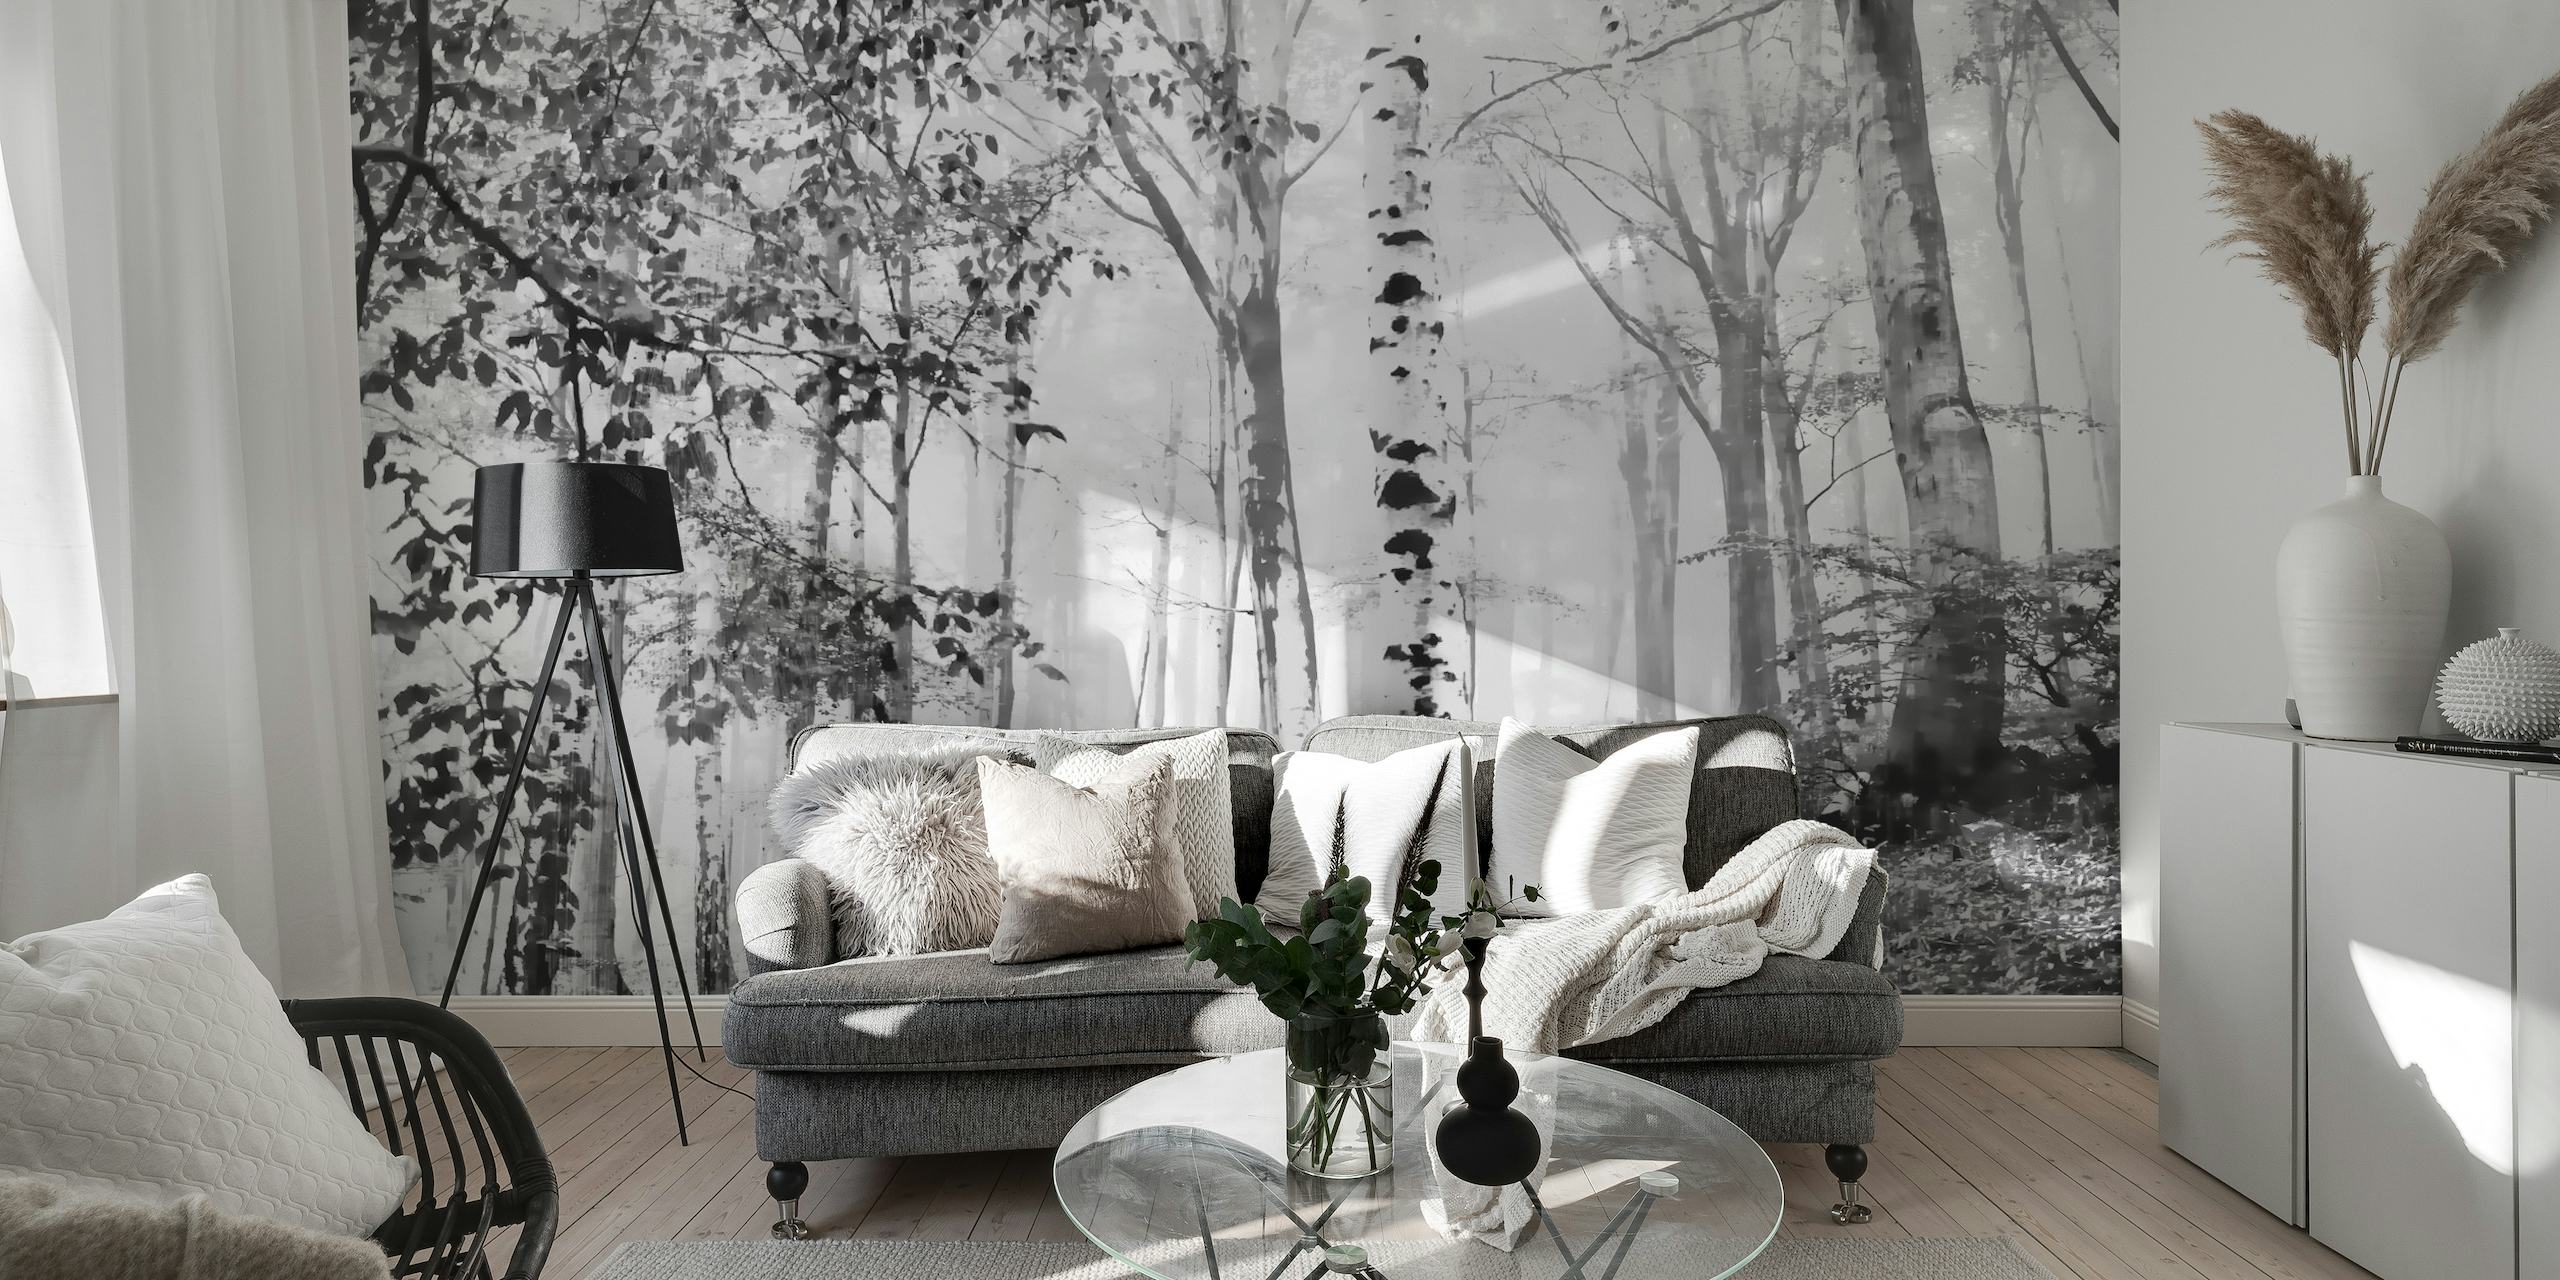 Černobílá fototapeta Misty březový les, která vytváří poklidnou lesní scénu pro výzdobu interiéru